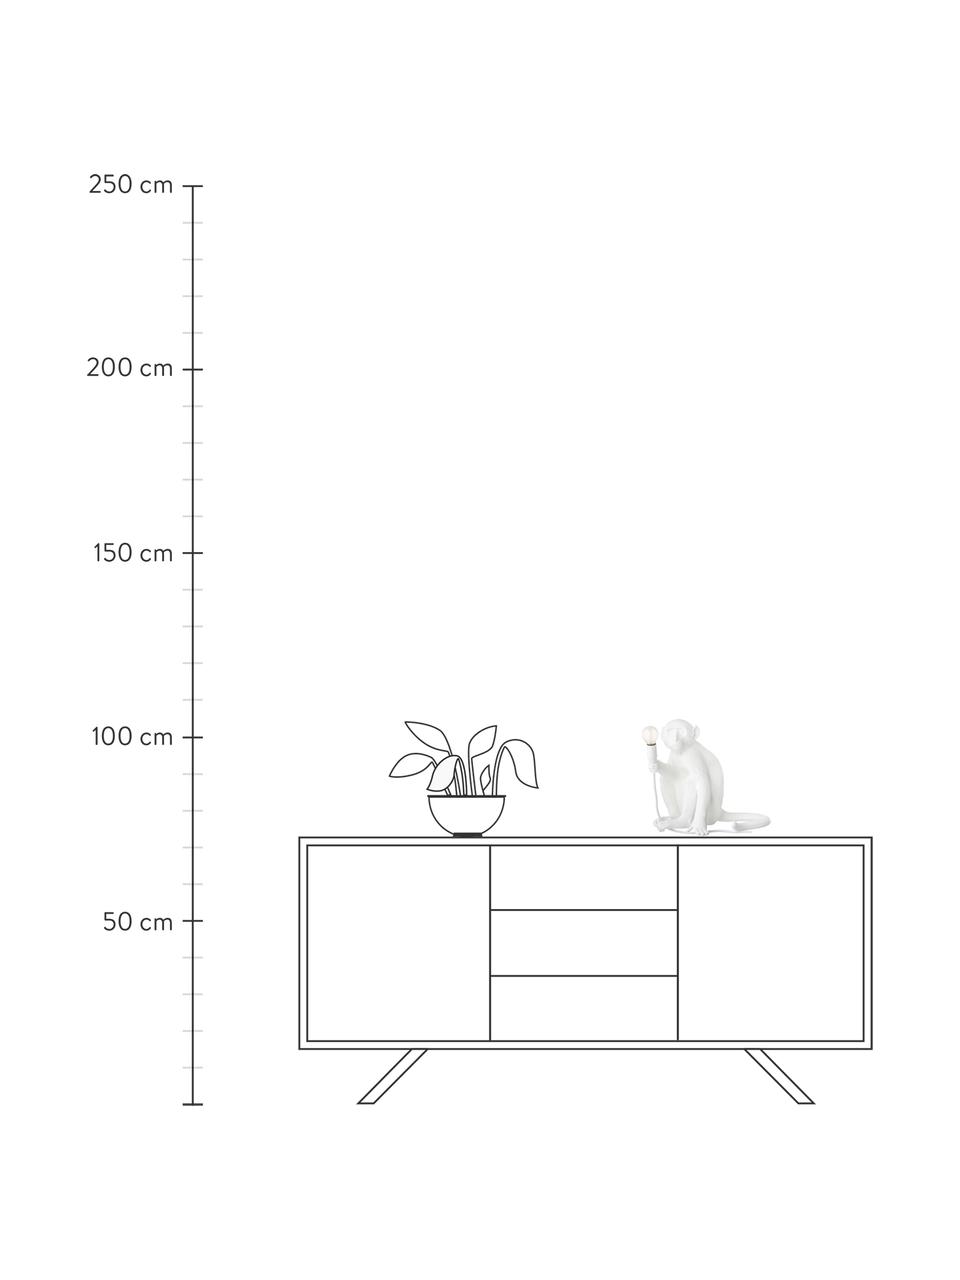 Design Tischlampe Monkey, Weiß, B 34 x H 32 cm